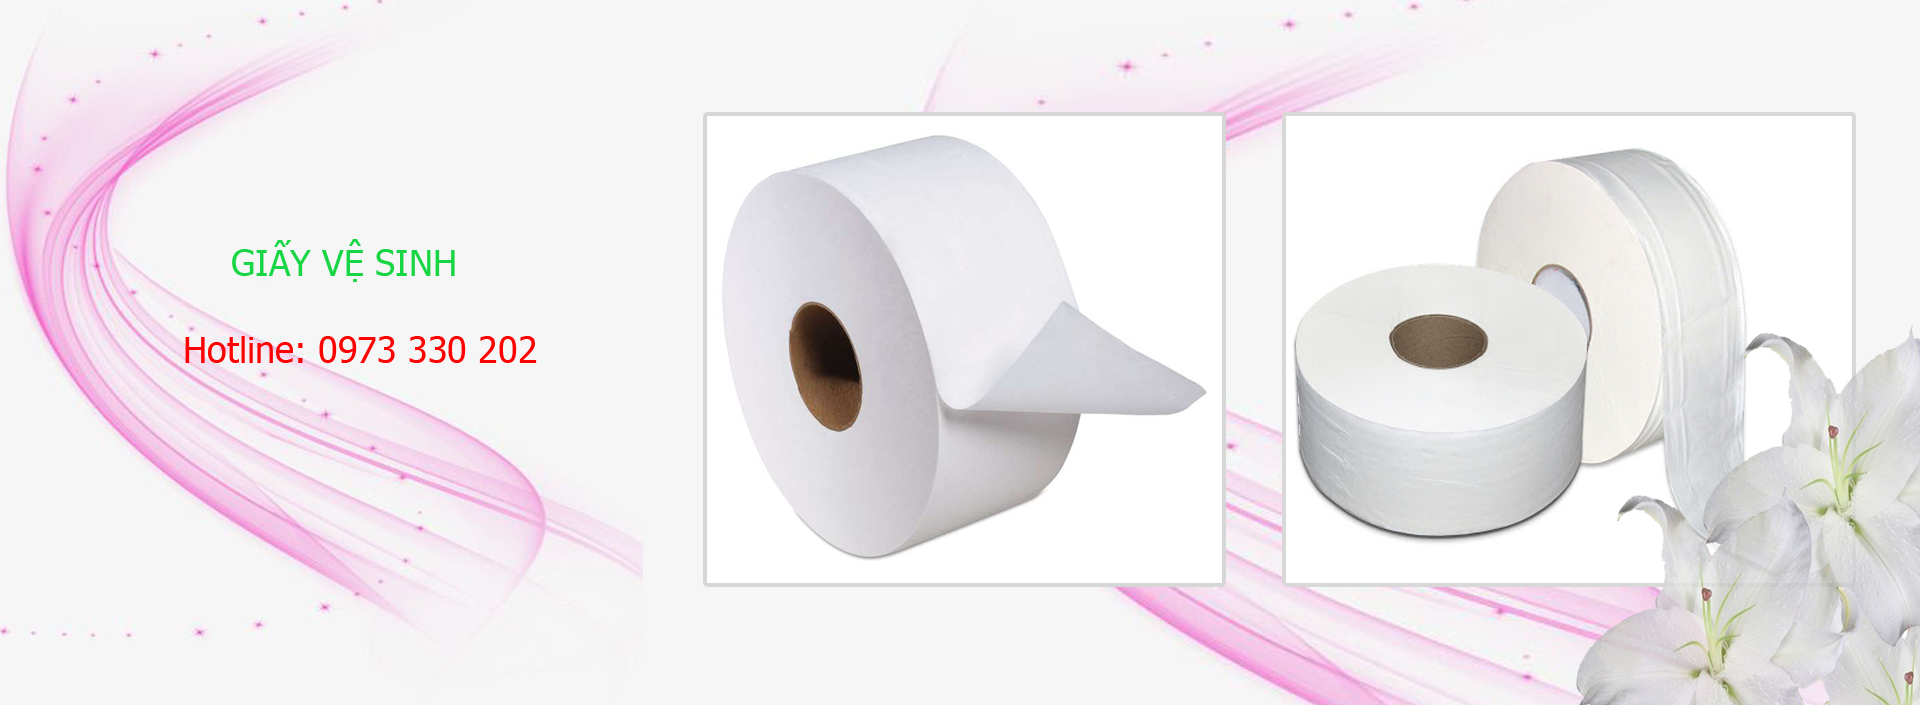 Cung cấp giấy vệ sinh giá rẽ cho nhà phân phối